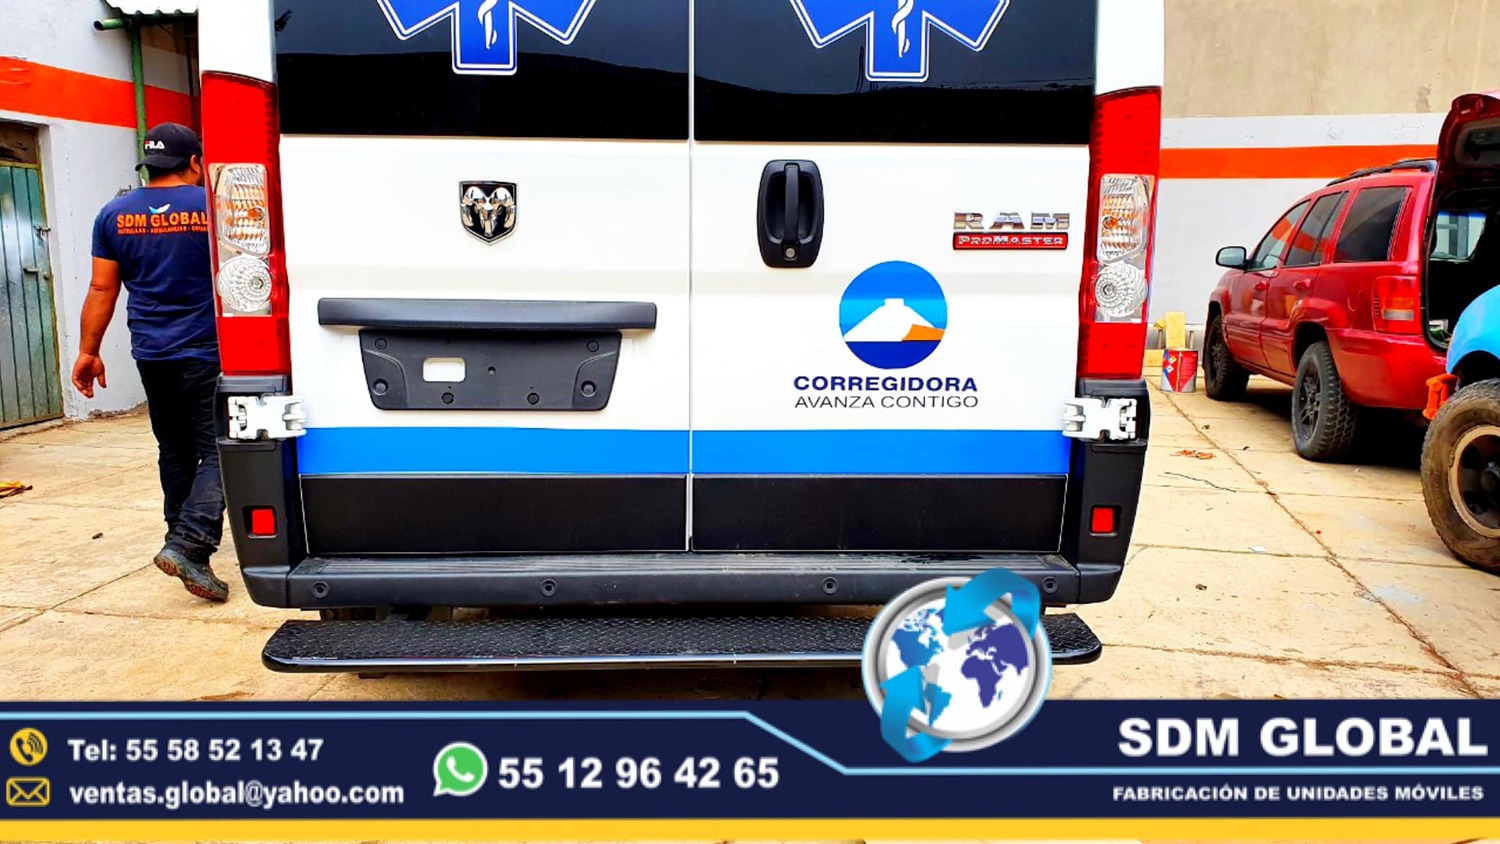 <span style="font-weight: bold;">Venta de Ambulancias de traslado en SDM Global Mexico</span><br>